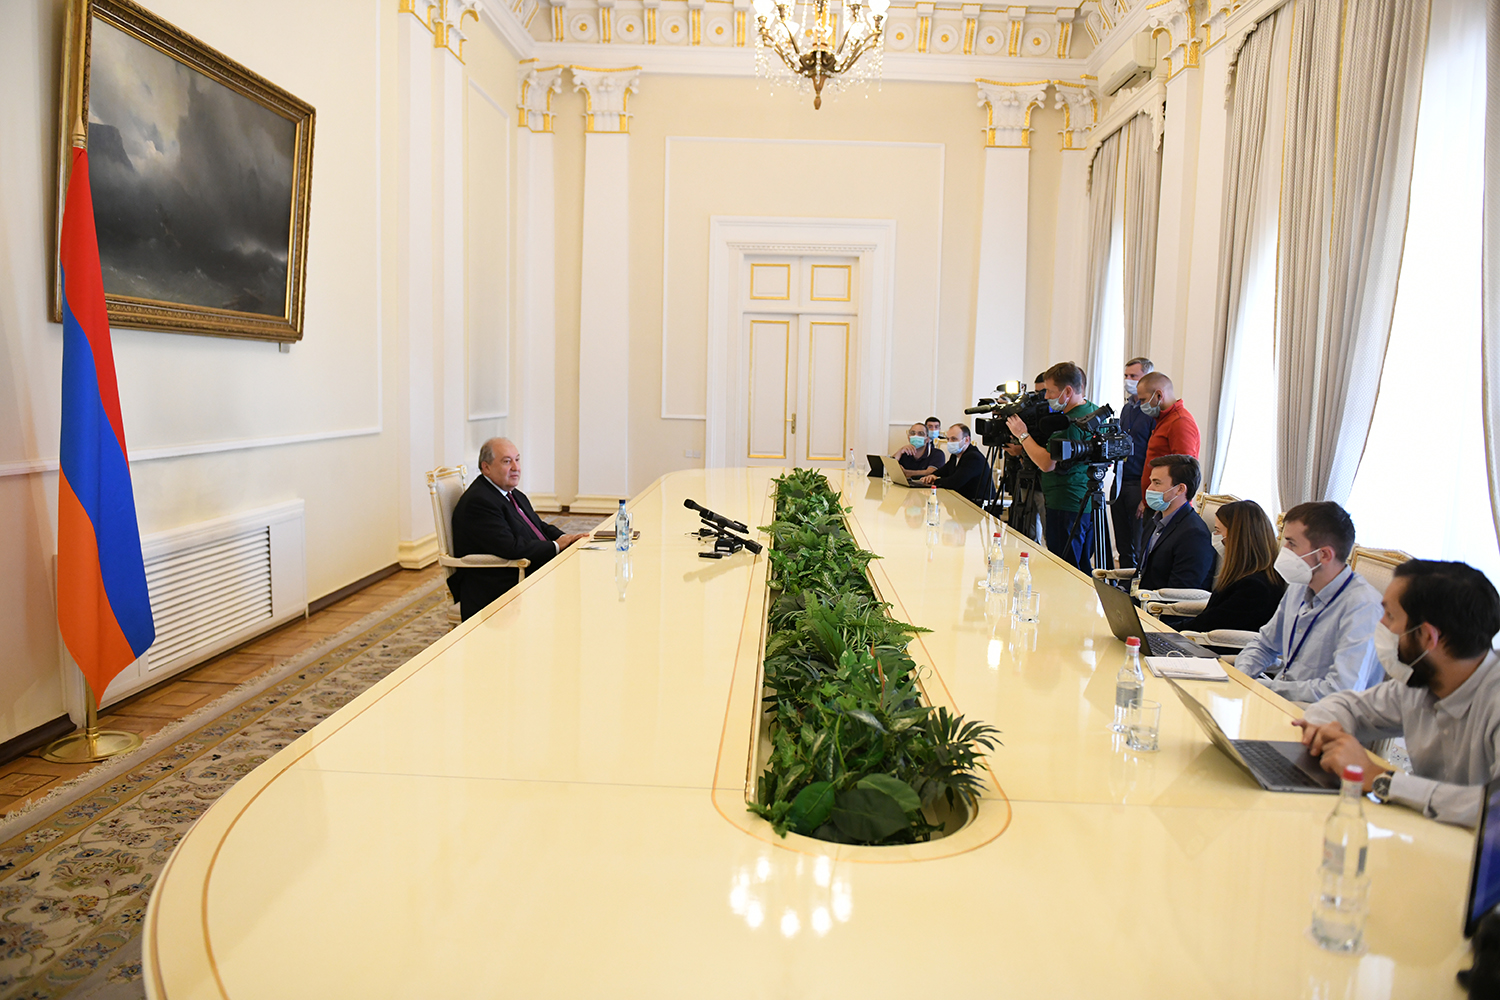 Ադրբեջանի սկսած պատերազմն էթնիկ զտման նպատակ ունի. նախագահը հանդիպել է ռուսաստանյան ԶԼՄ ներկայացուցիչների հետ